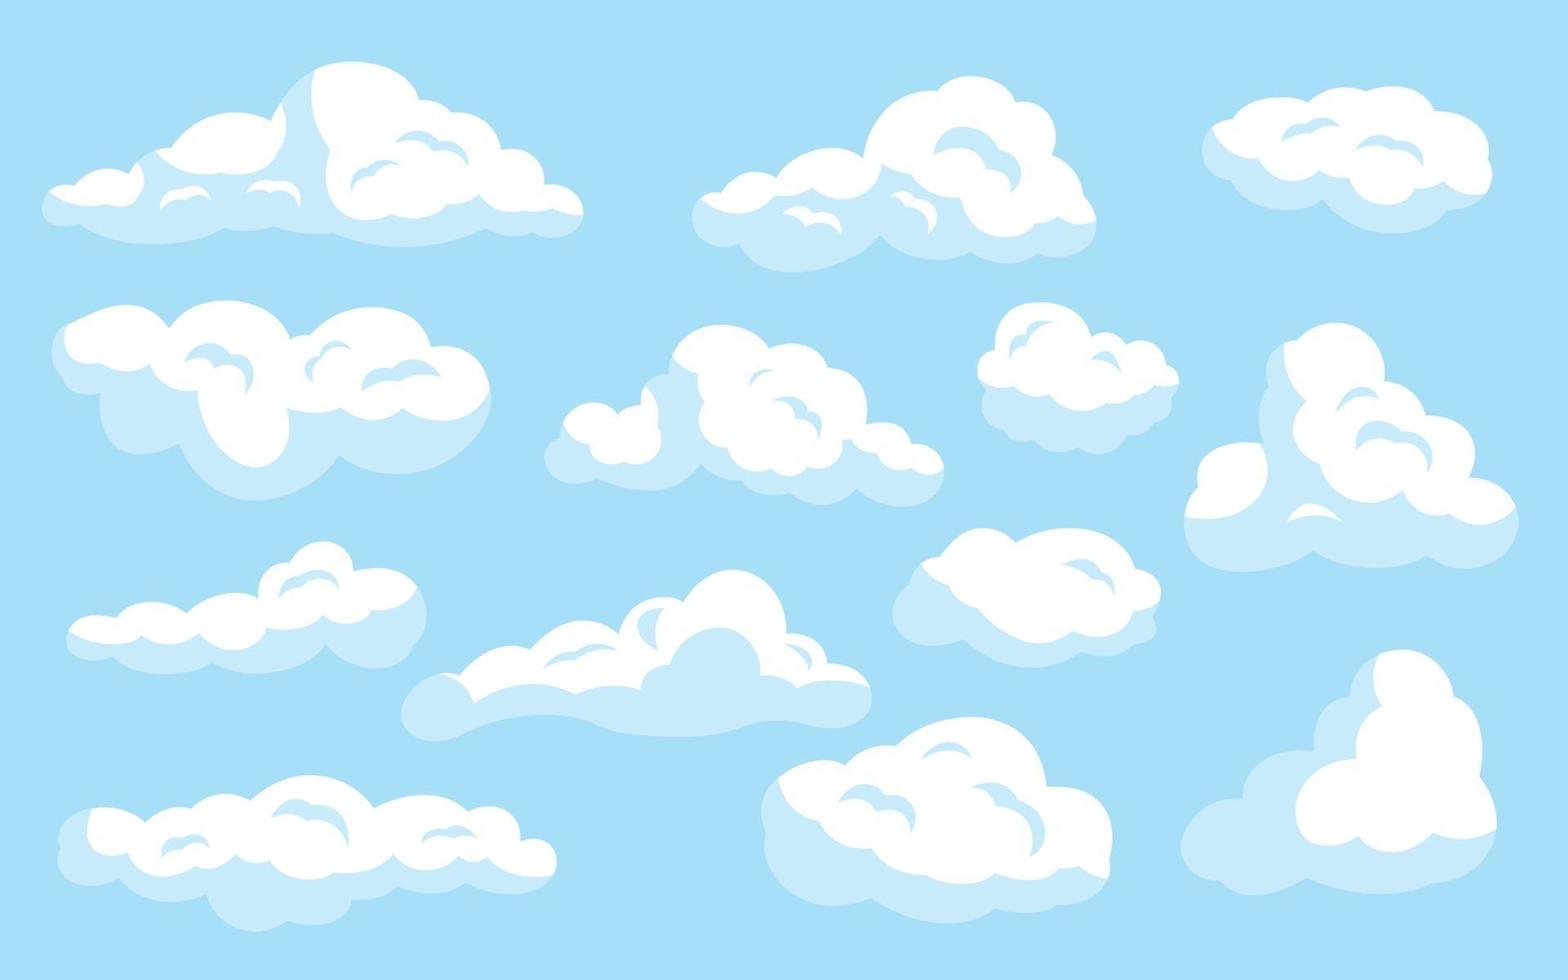 nuvole bianche del fumetto messe sul blu isolato vettore